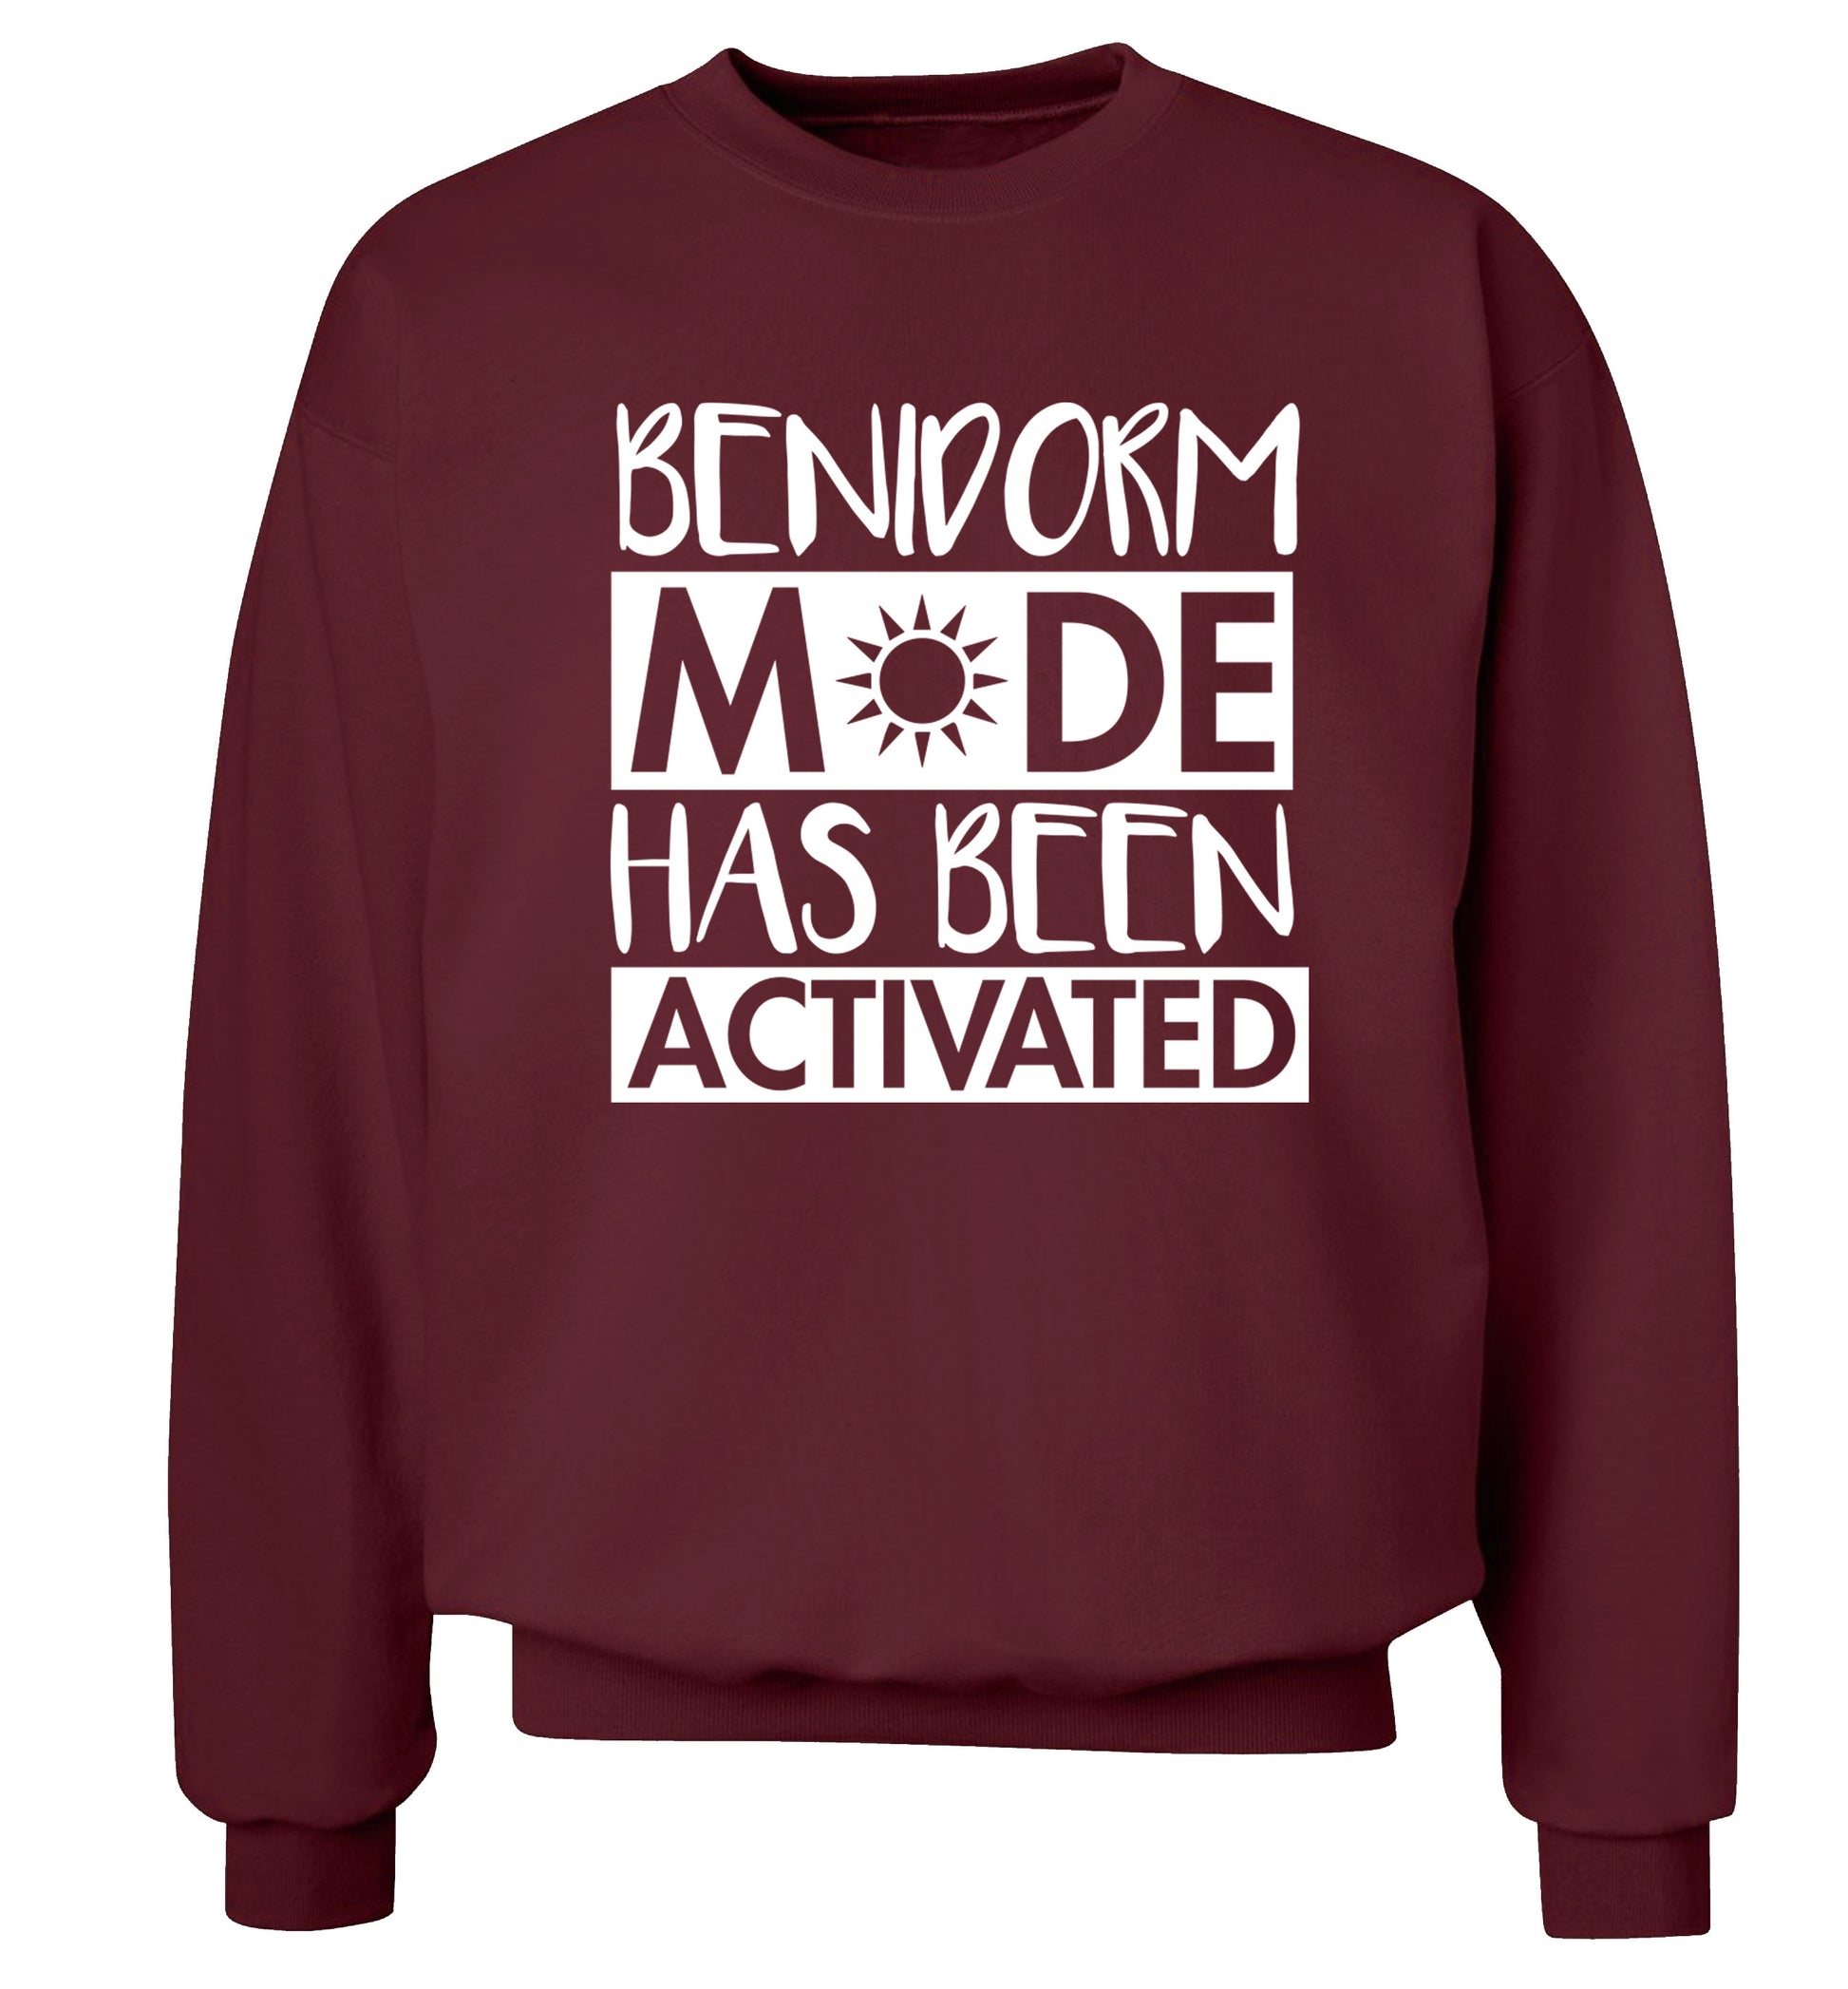 Benidorm mode has been activated Adult's unisex maroon Sweater 2XL